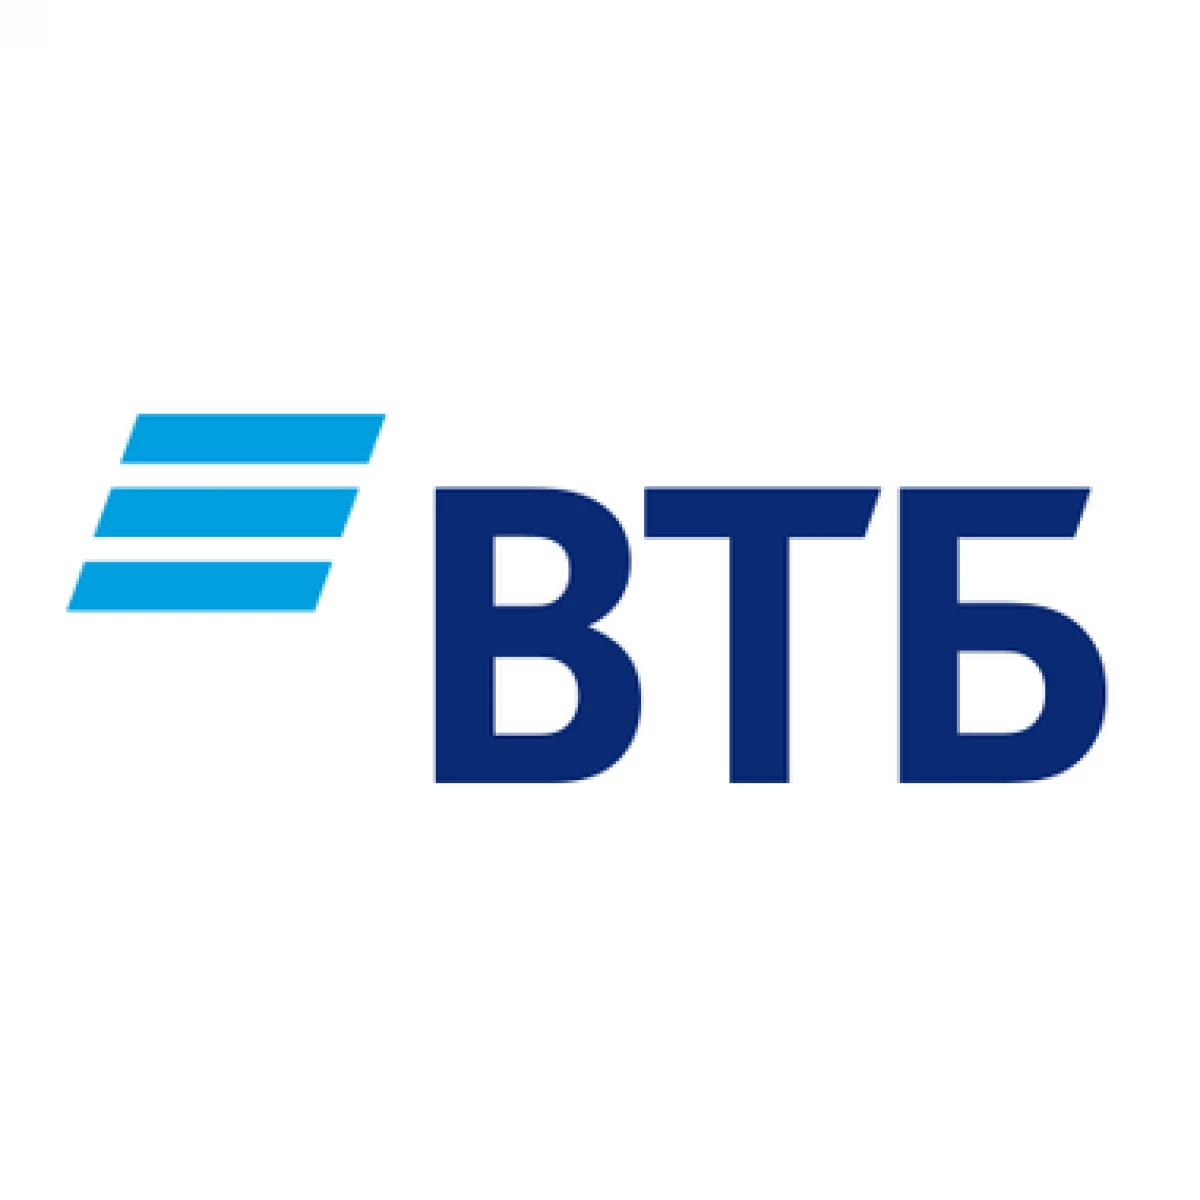 VTB Factoring lancéiert kleng a mëttel Business Support Programm 22838_1